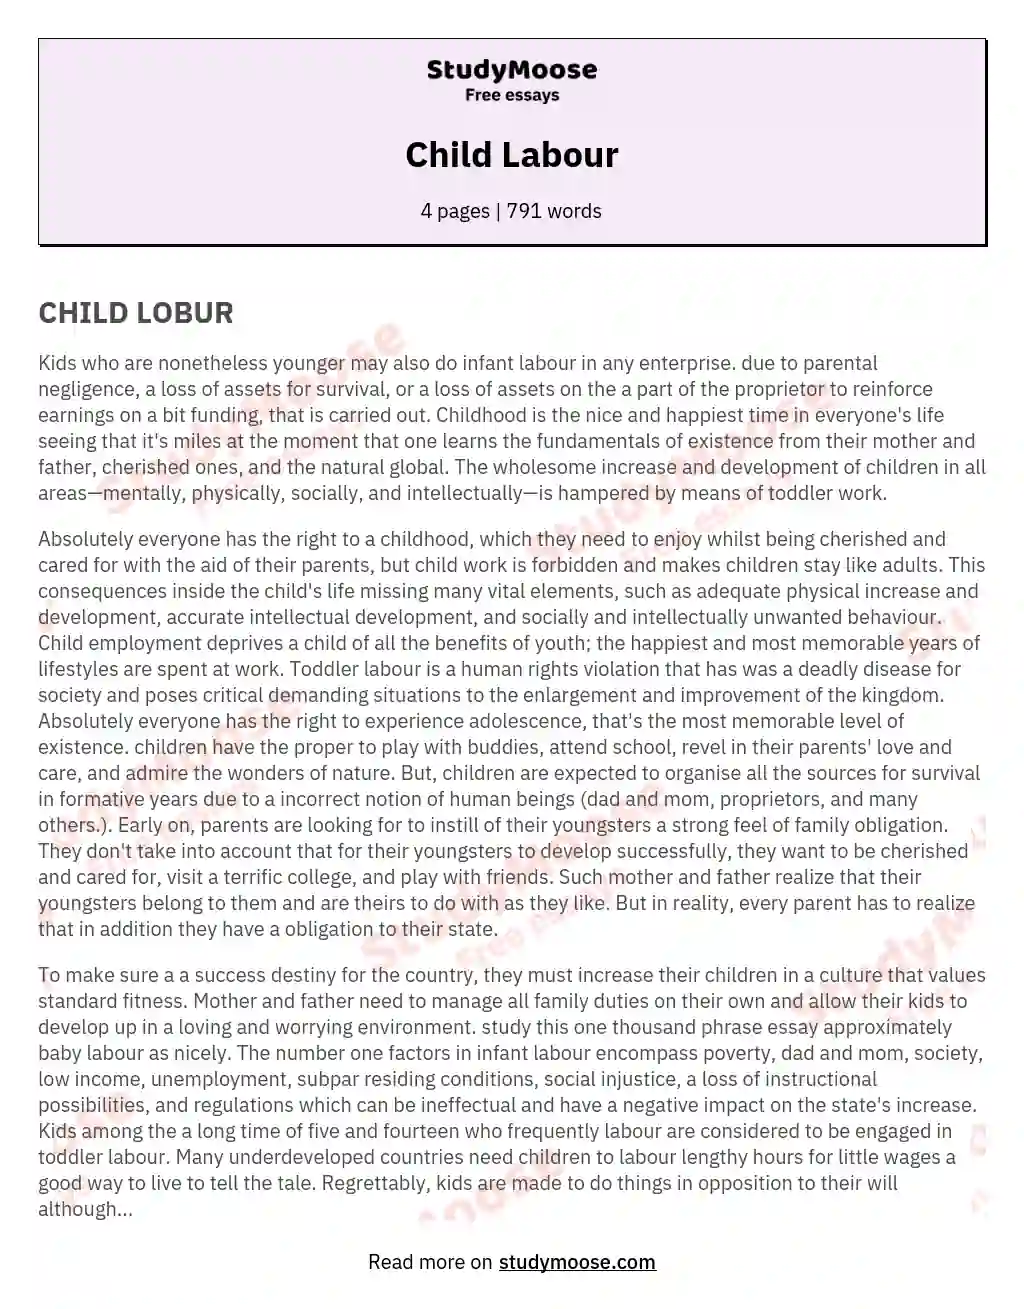 Child Labour essay